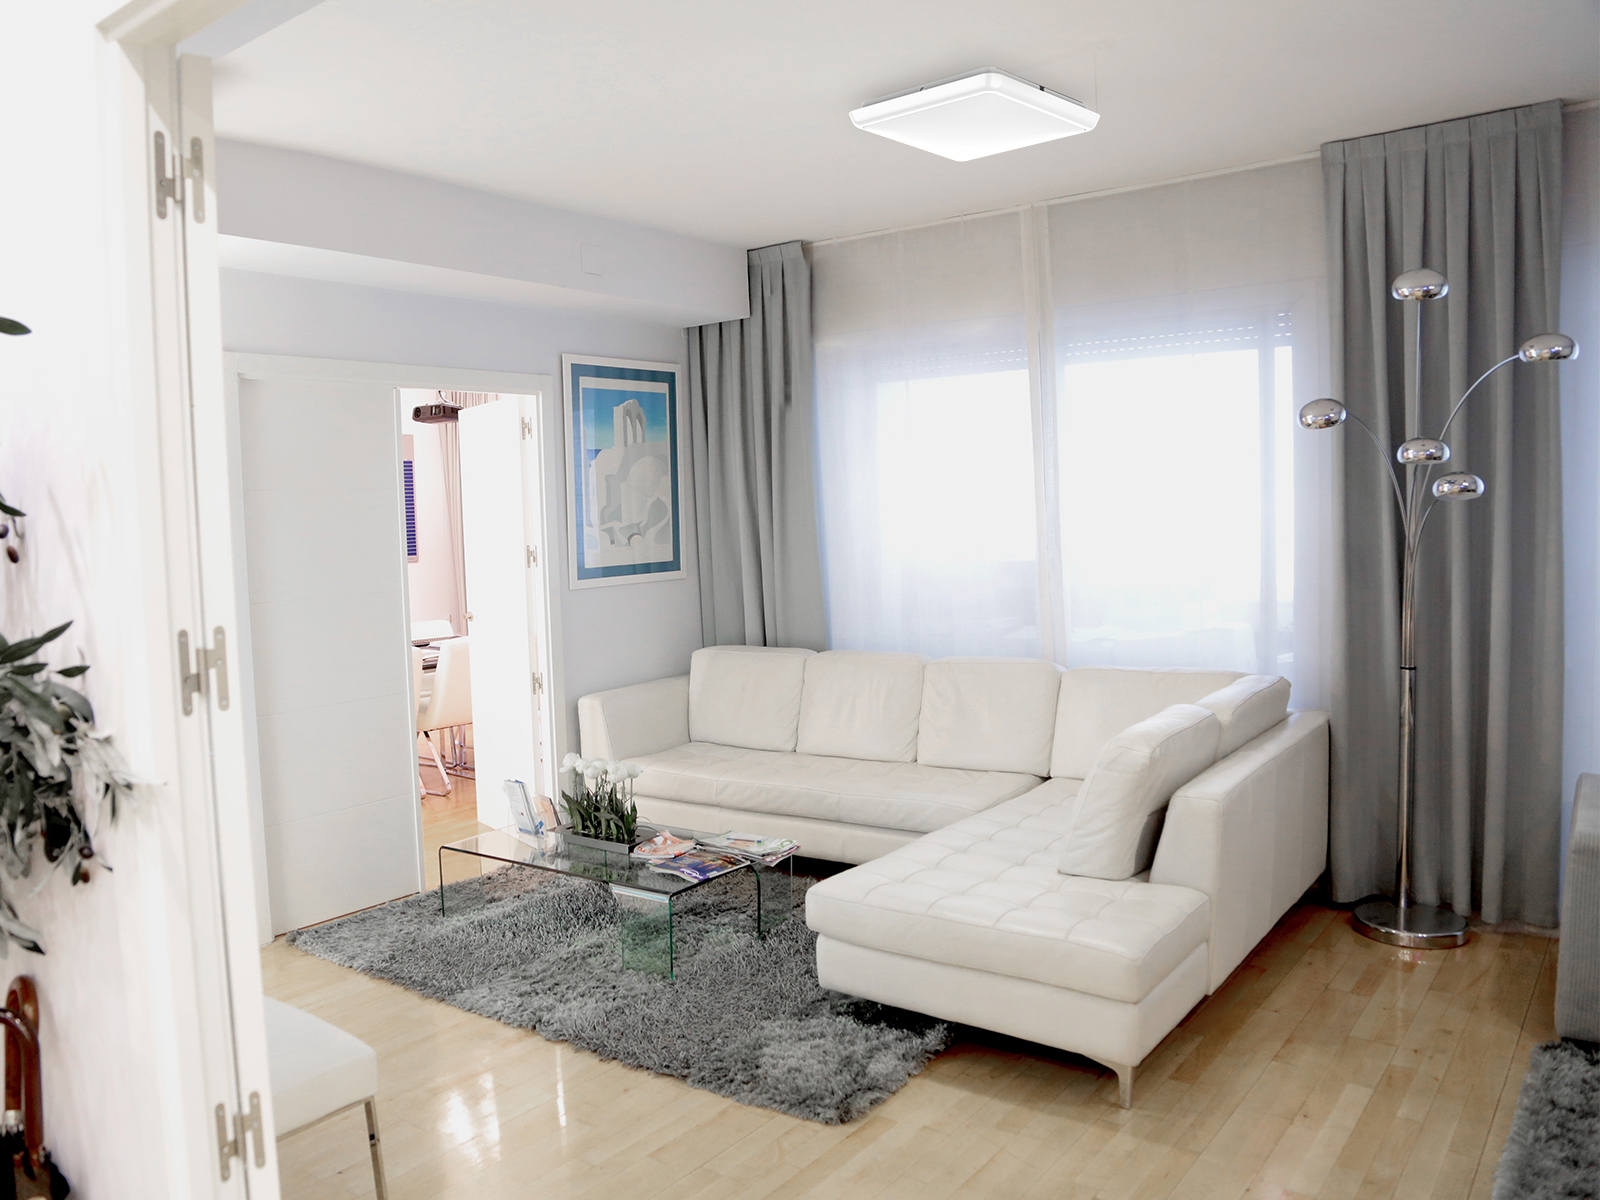 TUV certified led ceiling light